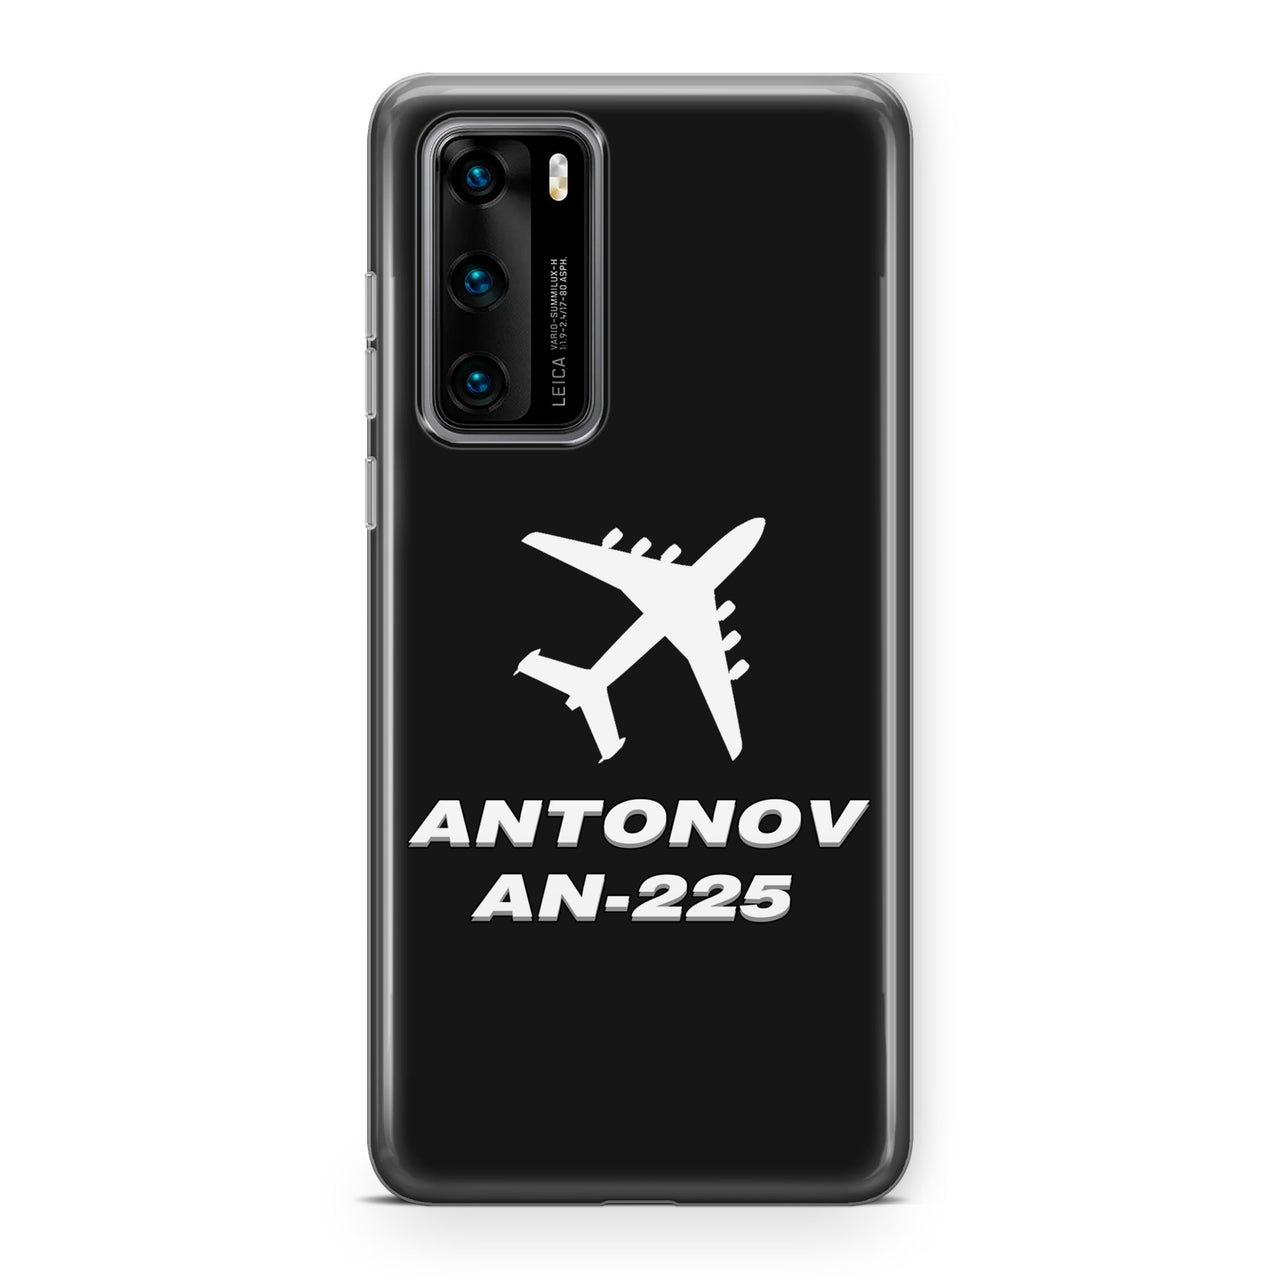 Antonov AN-225 (28) Designed Huawei Cases